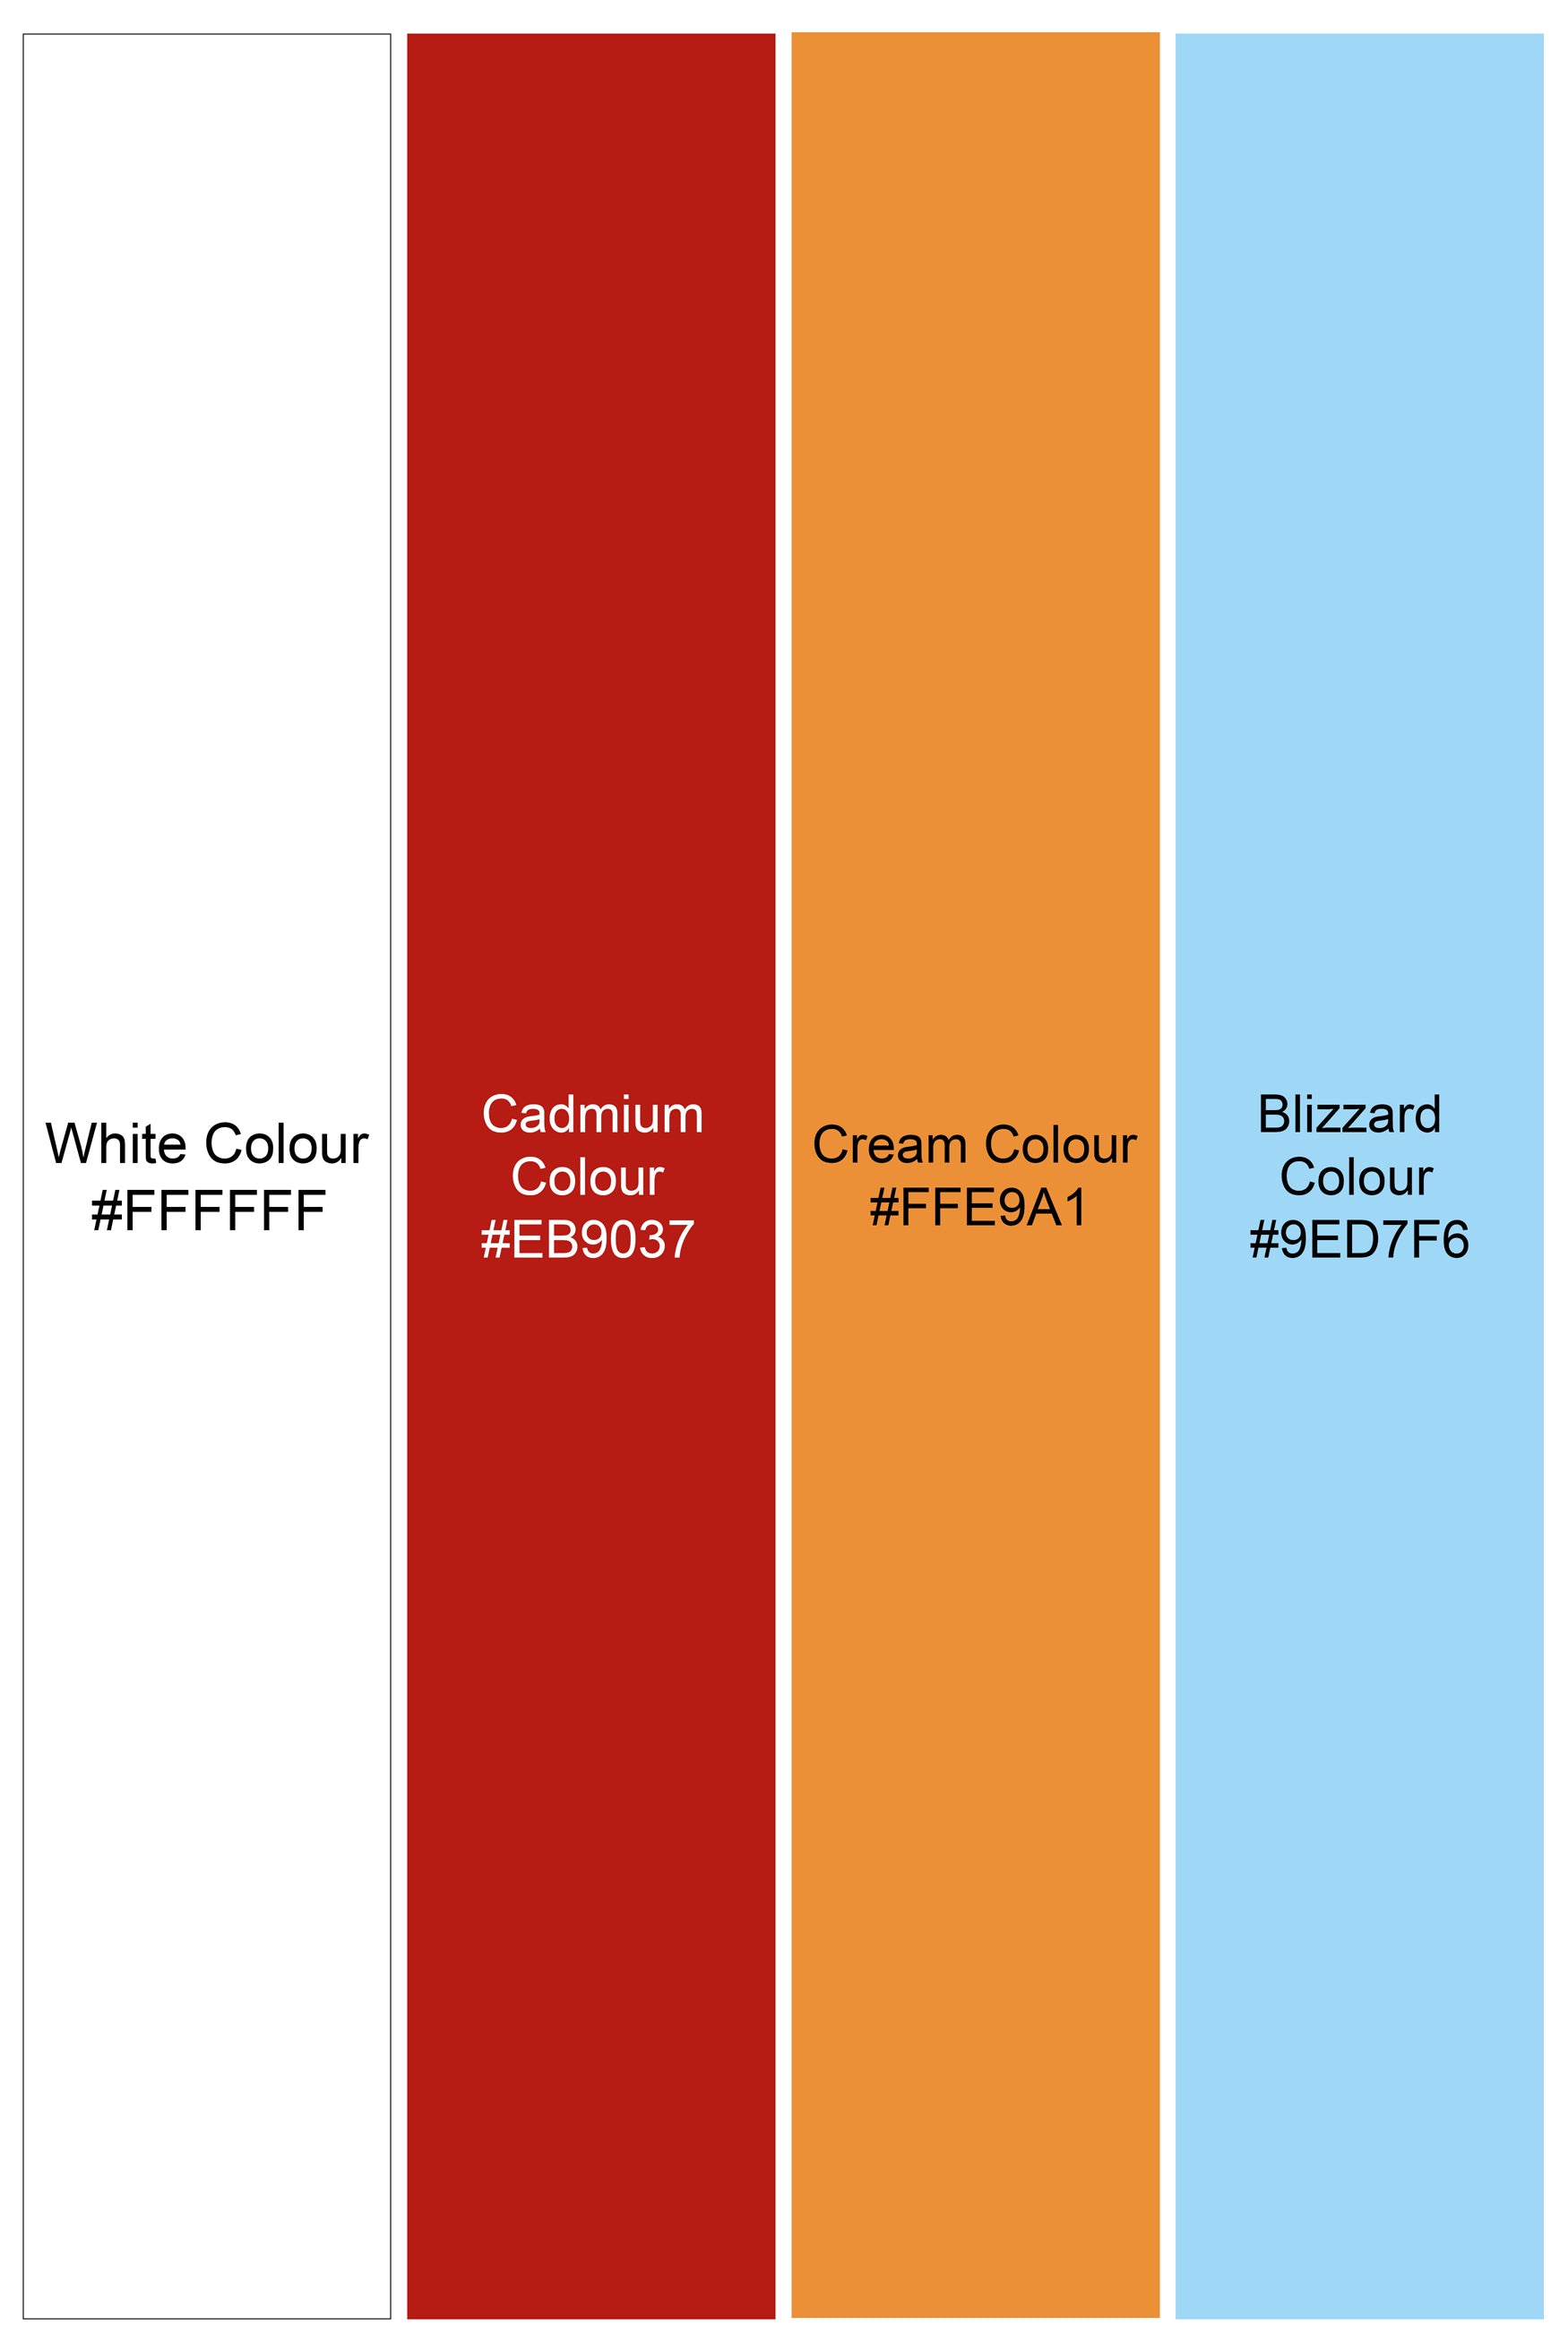 Bright White and Cadmium Red Multicolour Striped Premium Cotton Shirt 11438-BLK-38, 11438-BLK-H-38, 11438-BLK-39, 11438-BLK-H-39, 11438-BLK-40, 11438-BLK-H-40, 11438-BLK-42, 11438-BLK-H-42, 11438-BLK-44, 11438-BLK-H-44, 11438-BLK-46, 11438-BLK-H-46, 11438-BLK-48, 11438-BLK-H-48, 11438-BLK-50, 11438-BLK-H-50, 11438-BLK-52, 11438-BLK-H-52